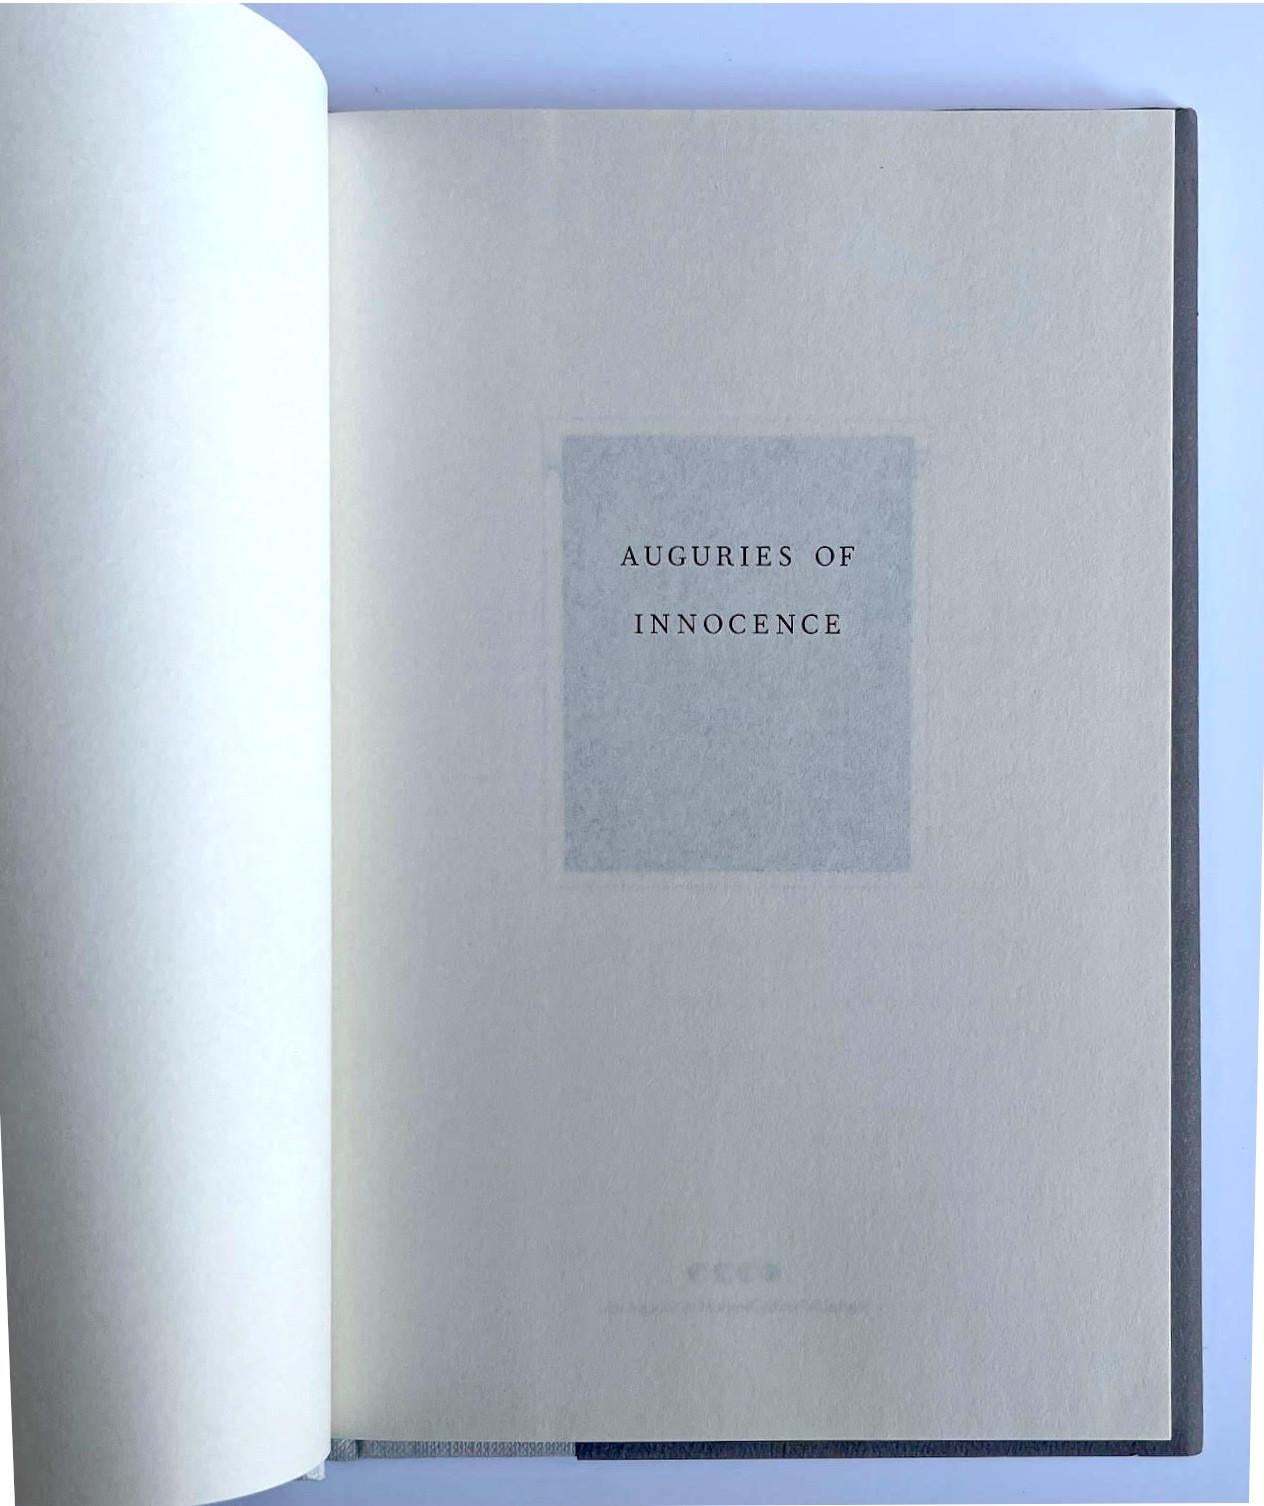 Patti Smith
Auguries of Innocence (livre de poésie signé à la main), 2005
Monographie reliée (signée à la main par Patti Smith sur la première page de garde)
Signé à la main par Patti Smith sur la première page de garde.
8 1/2 × 5 1/4 × 1/2